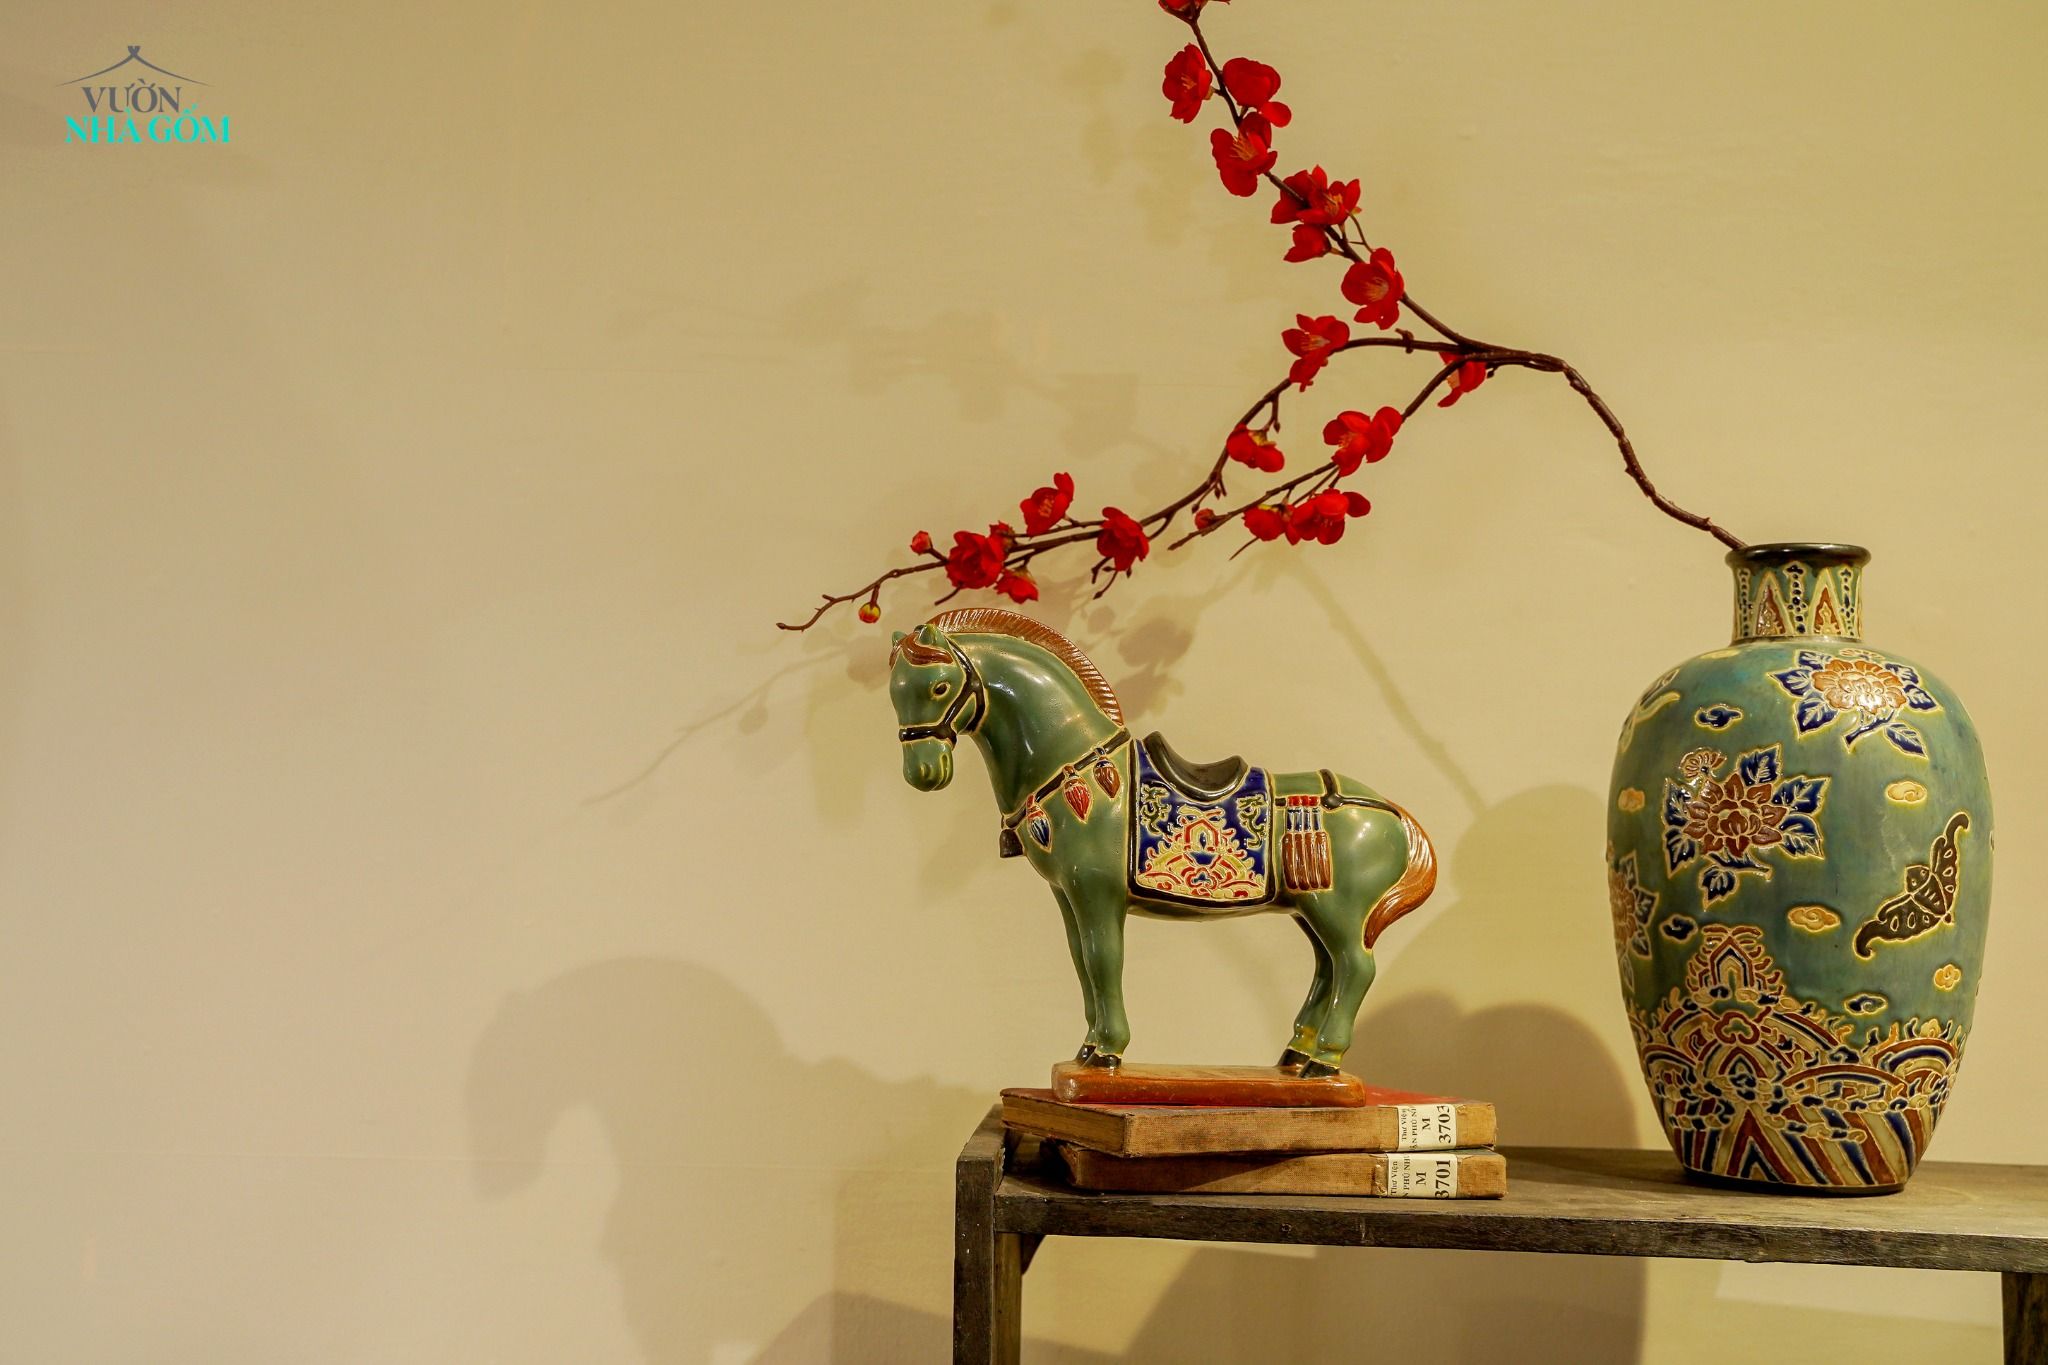  Ngựa gốm men xanh đồng, khắc thủ công hoa văn Cổ phục Việt, gốm Thủ Biên C17 x R25cm 